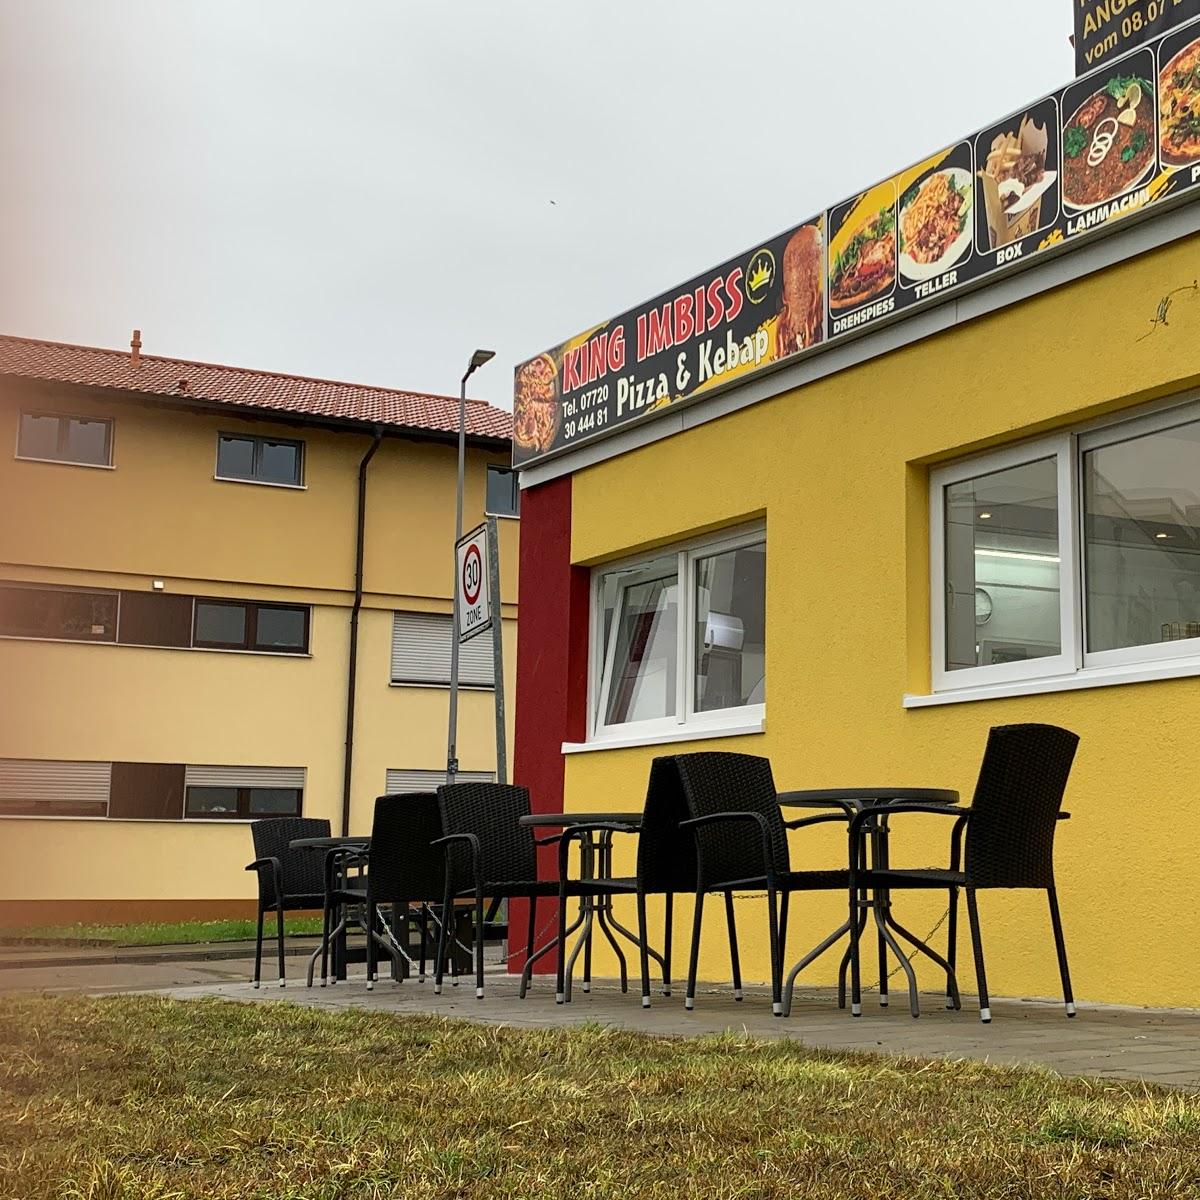 Restaurant "King Imbiss" in Villingen-Schwenningen